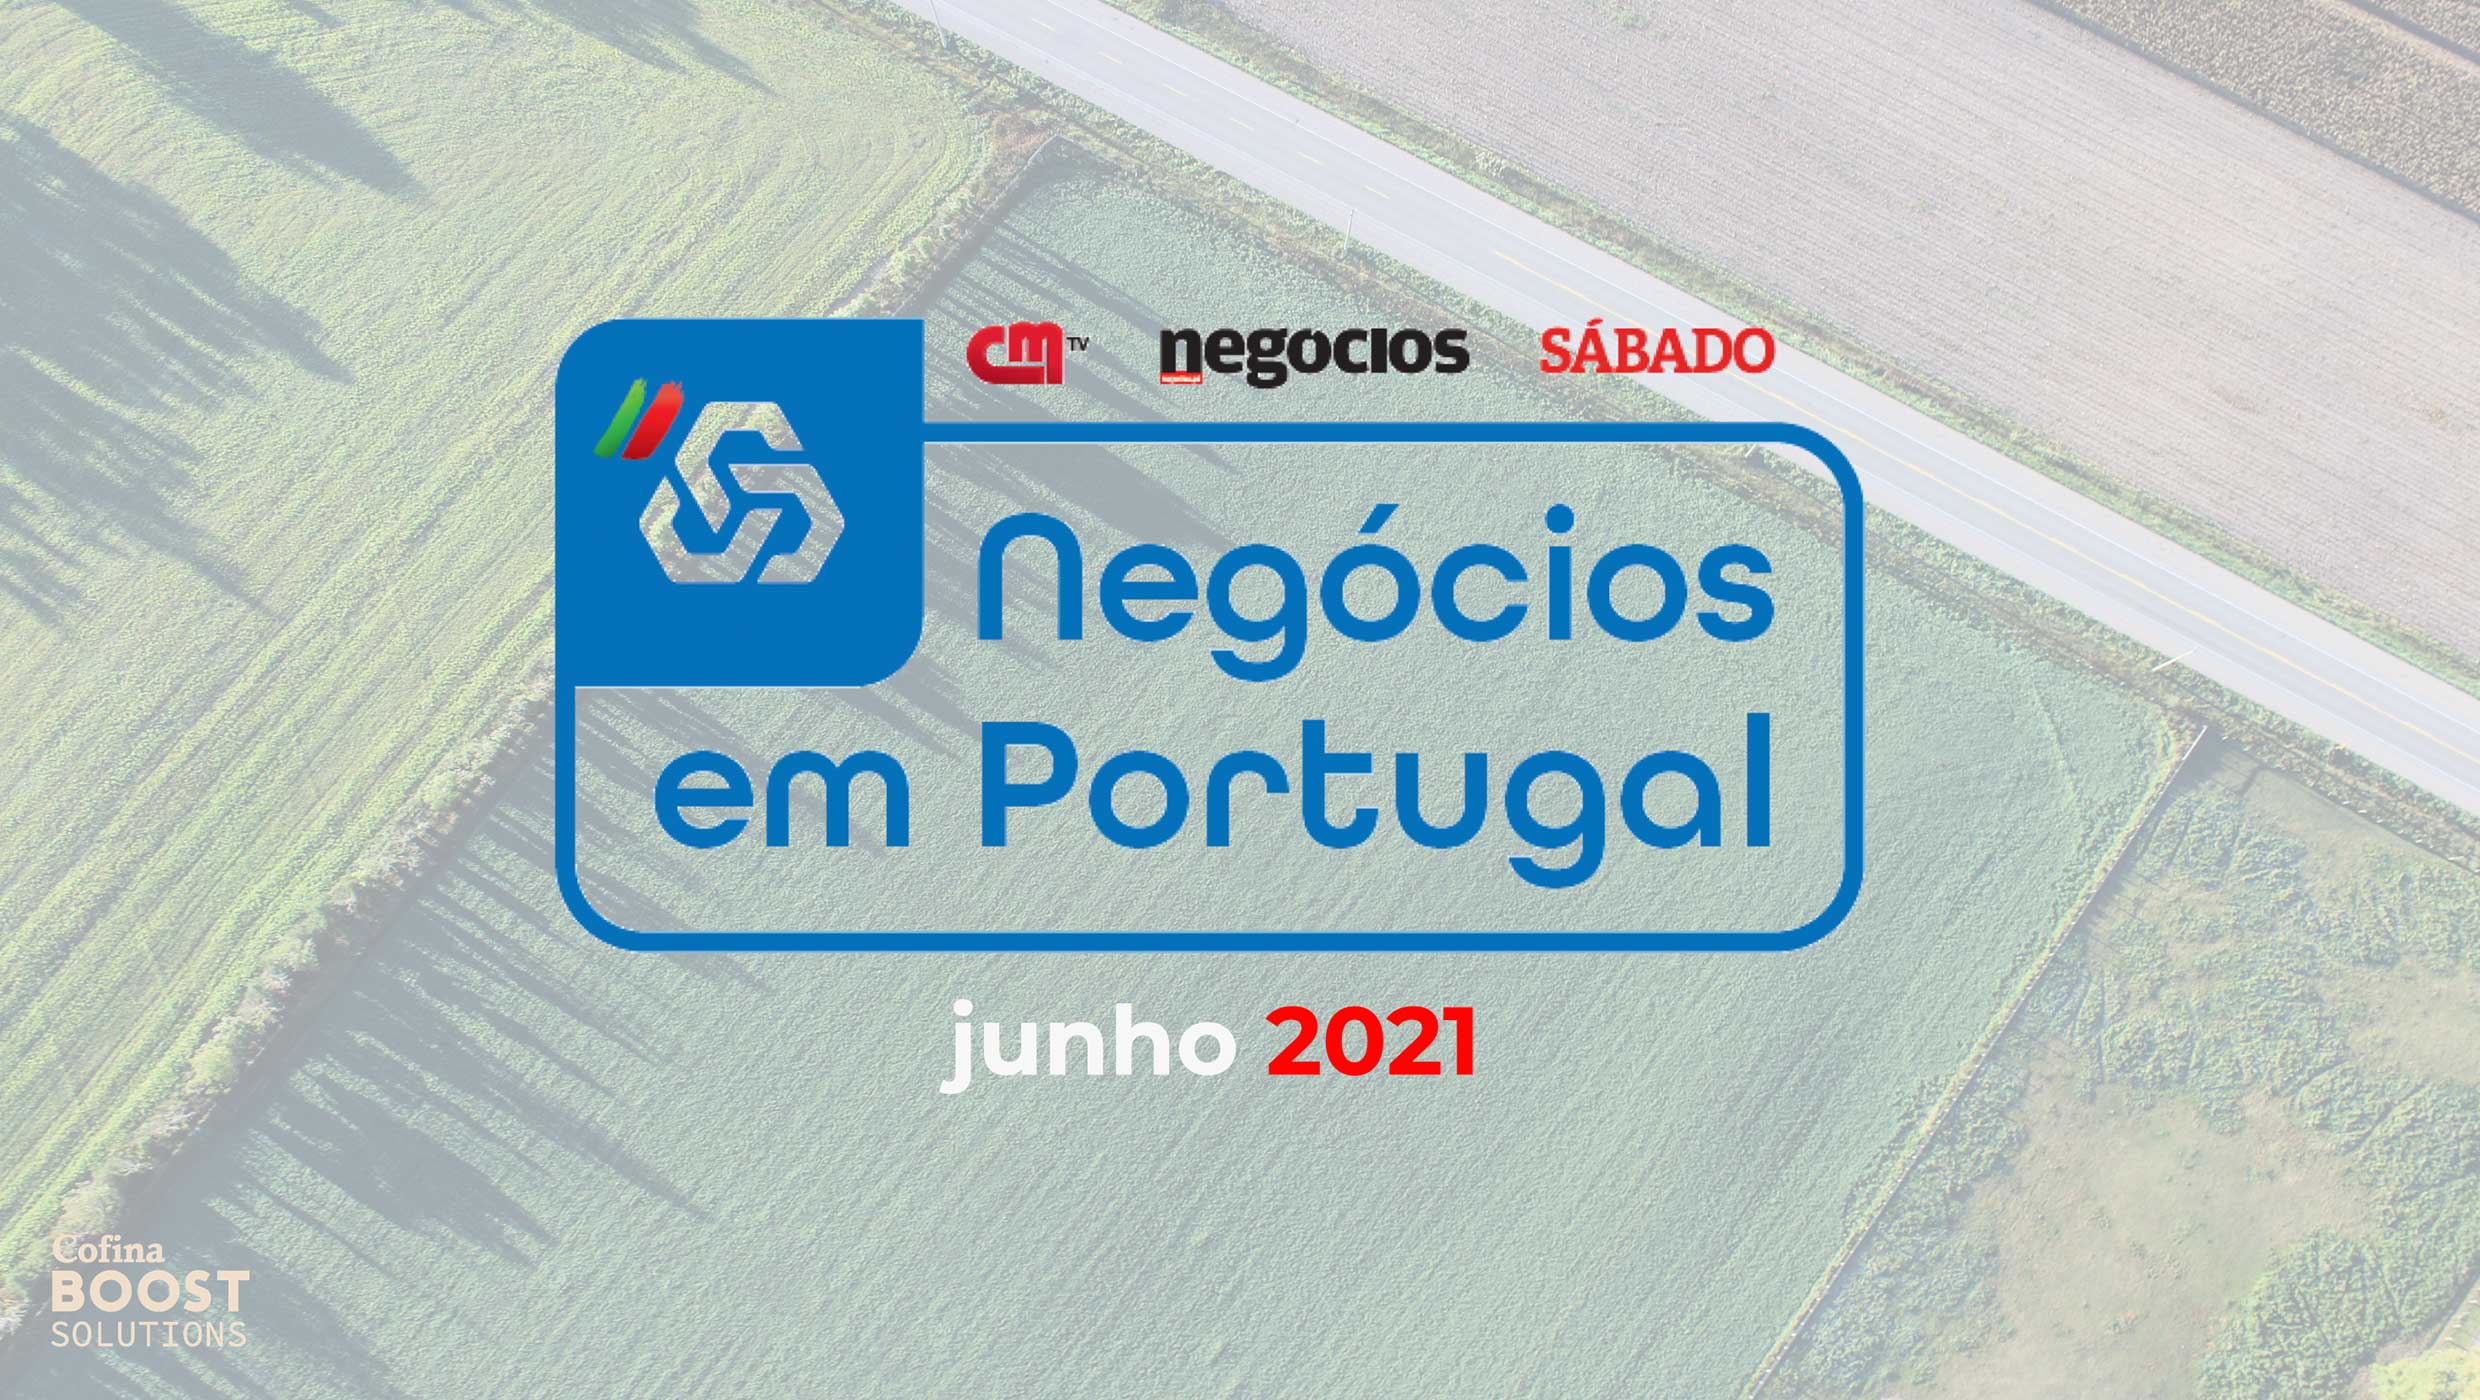 negocios-em-portugal-arranca-esta-terca-feira-na-cmtv-correio-da-manha-sabado-e-jornal-de-negocios-2